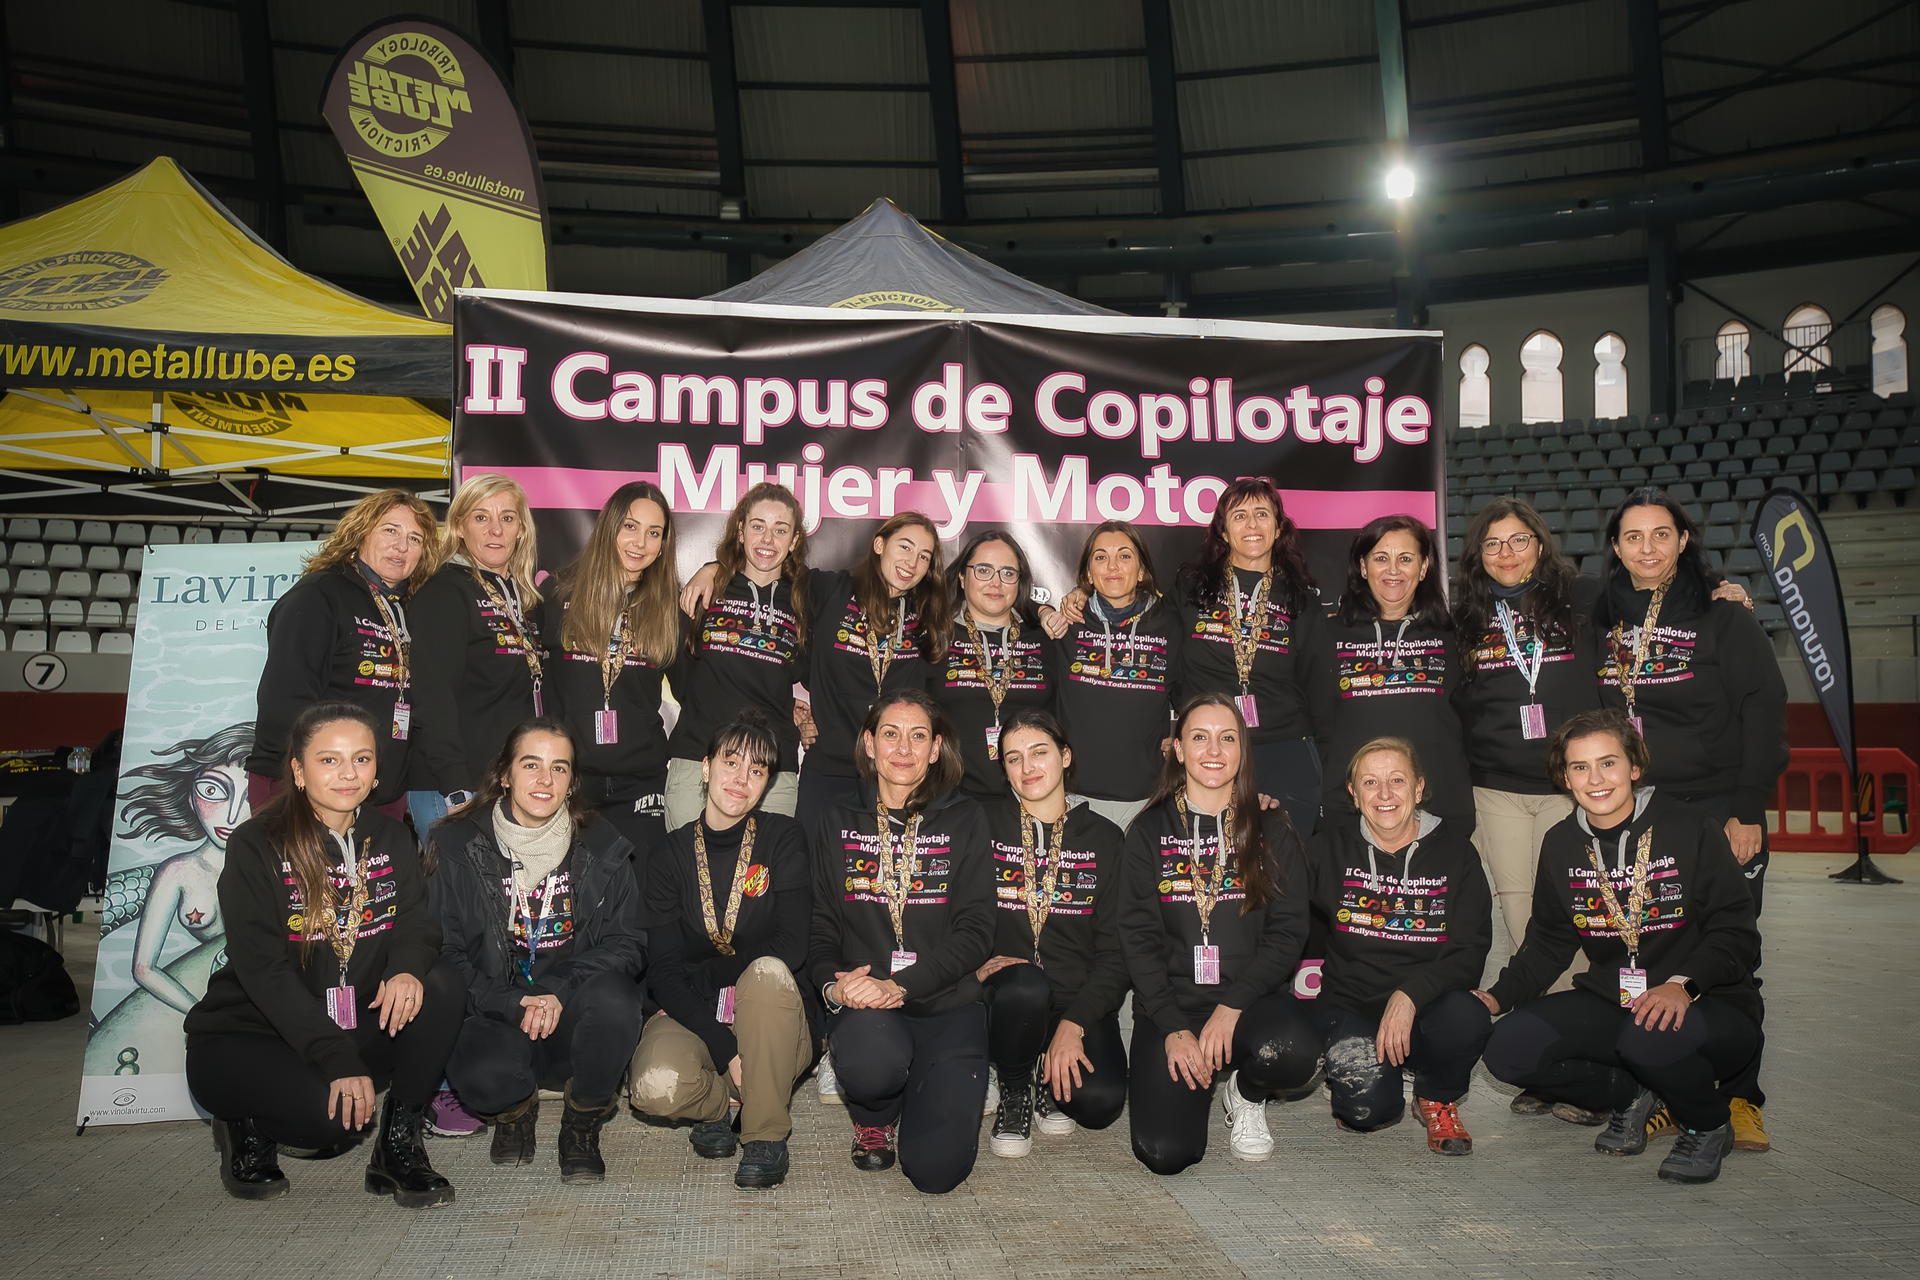 Éxito del II Campus de Copilotaje Mujer y Motor” celebrado en Villena